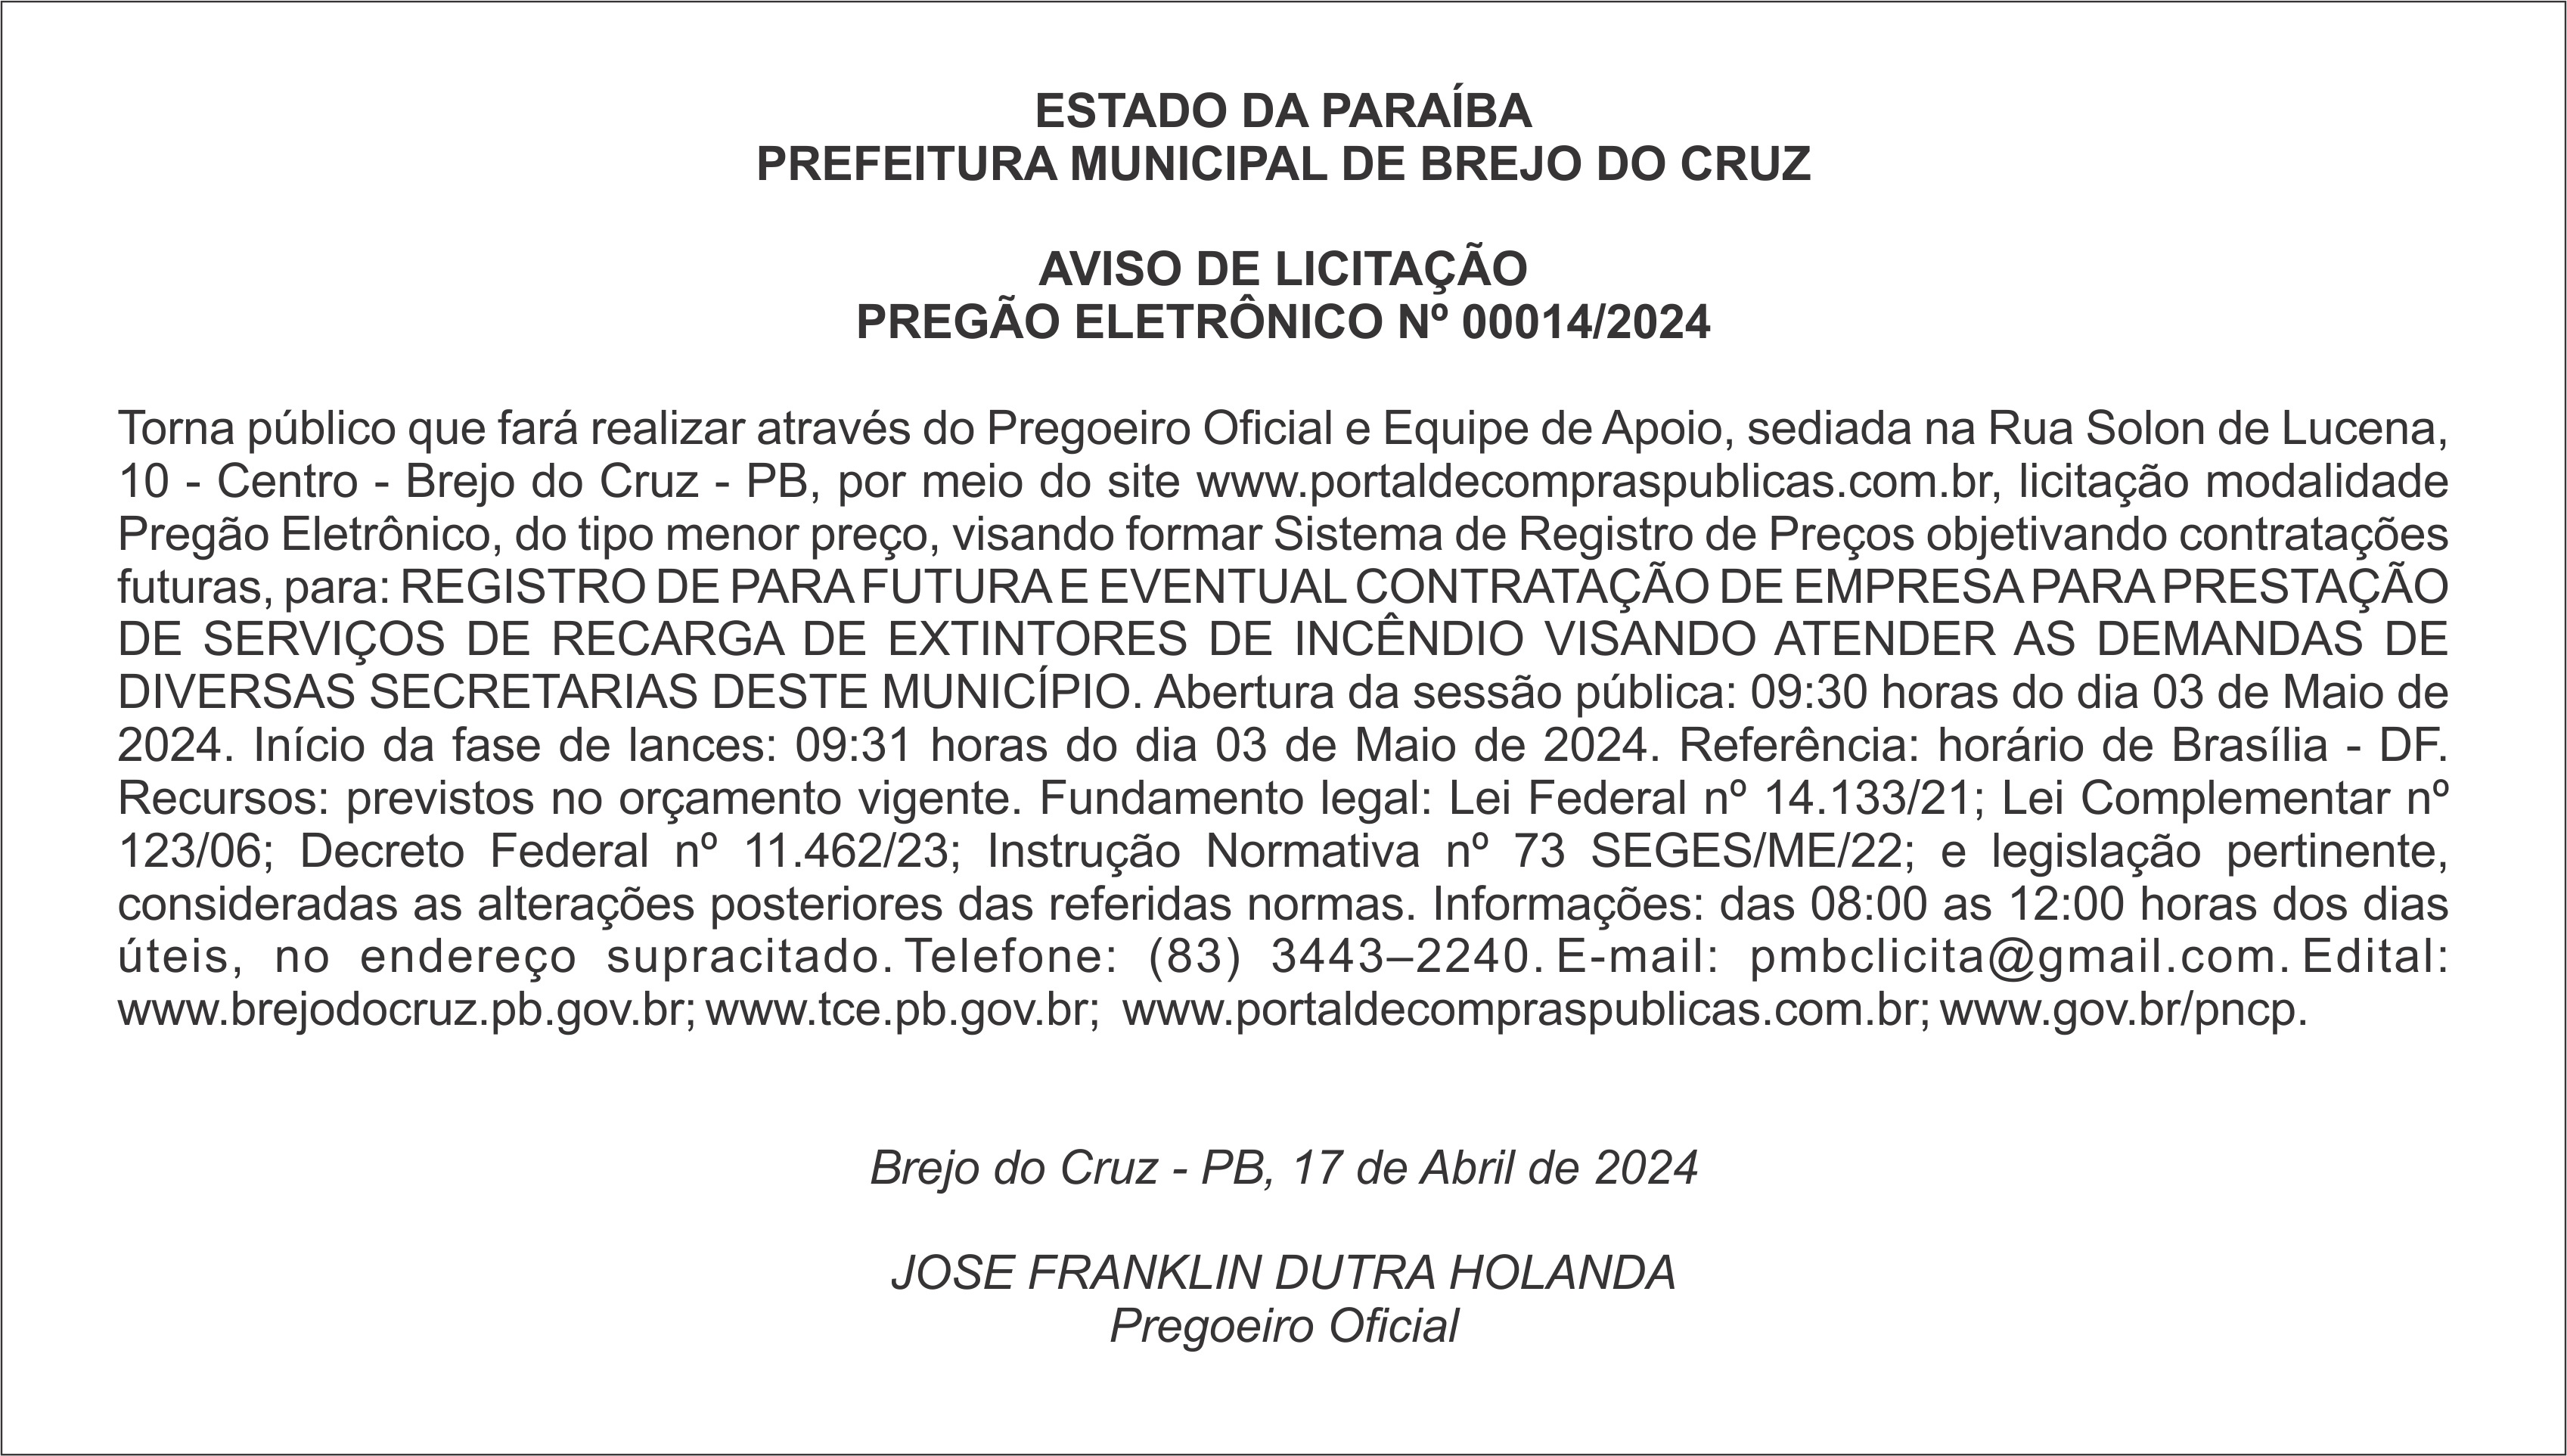 PREFEITURA MUNICIPAL DE BREJO DO CRUZ – AVISO DE LICITAÇÃO – PREGÃO ELETRÔNICO Nº 00014/2024